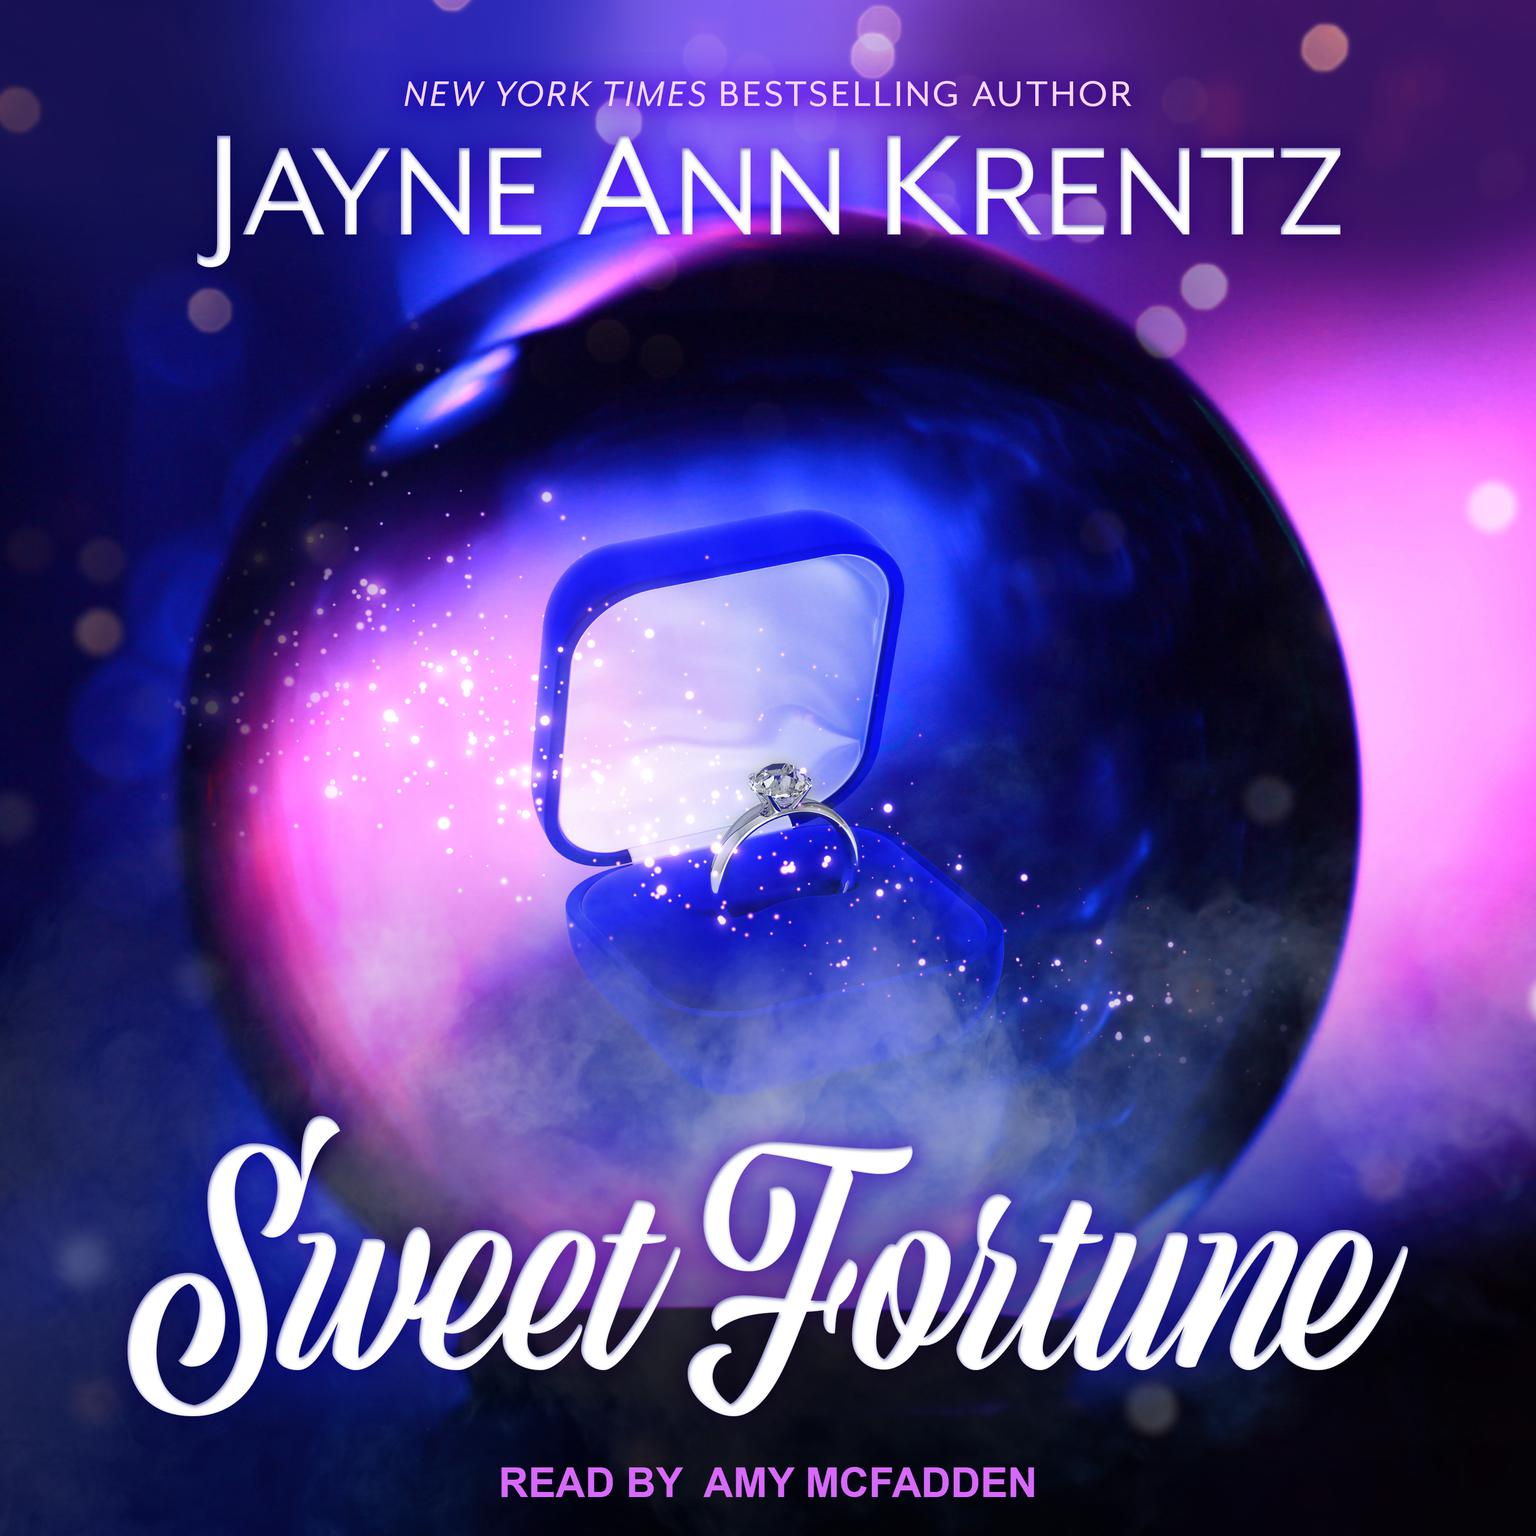 Sweet Fortune Audiobook, by Jayne Ann Krentz